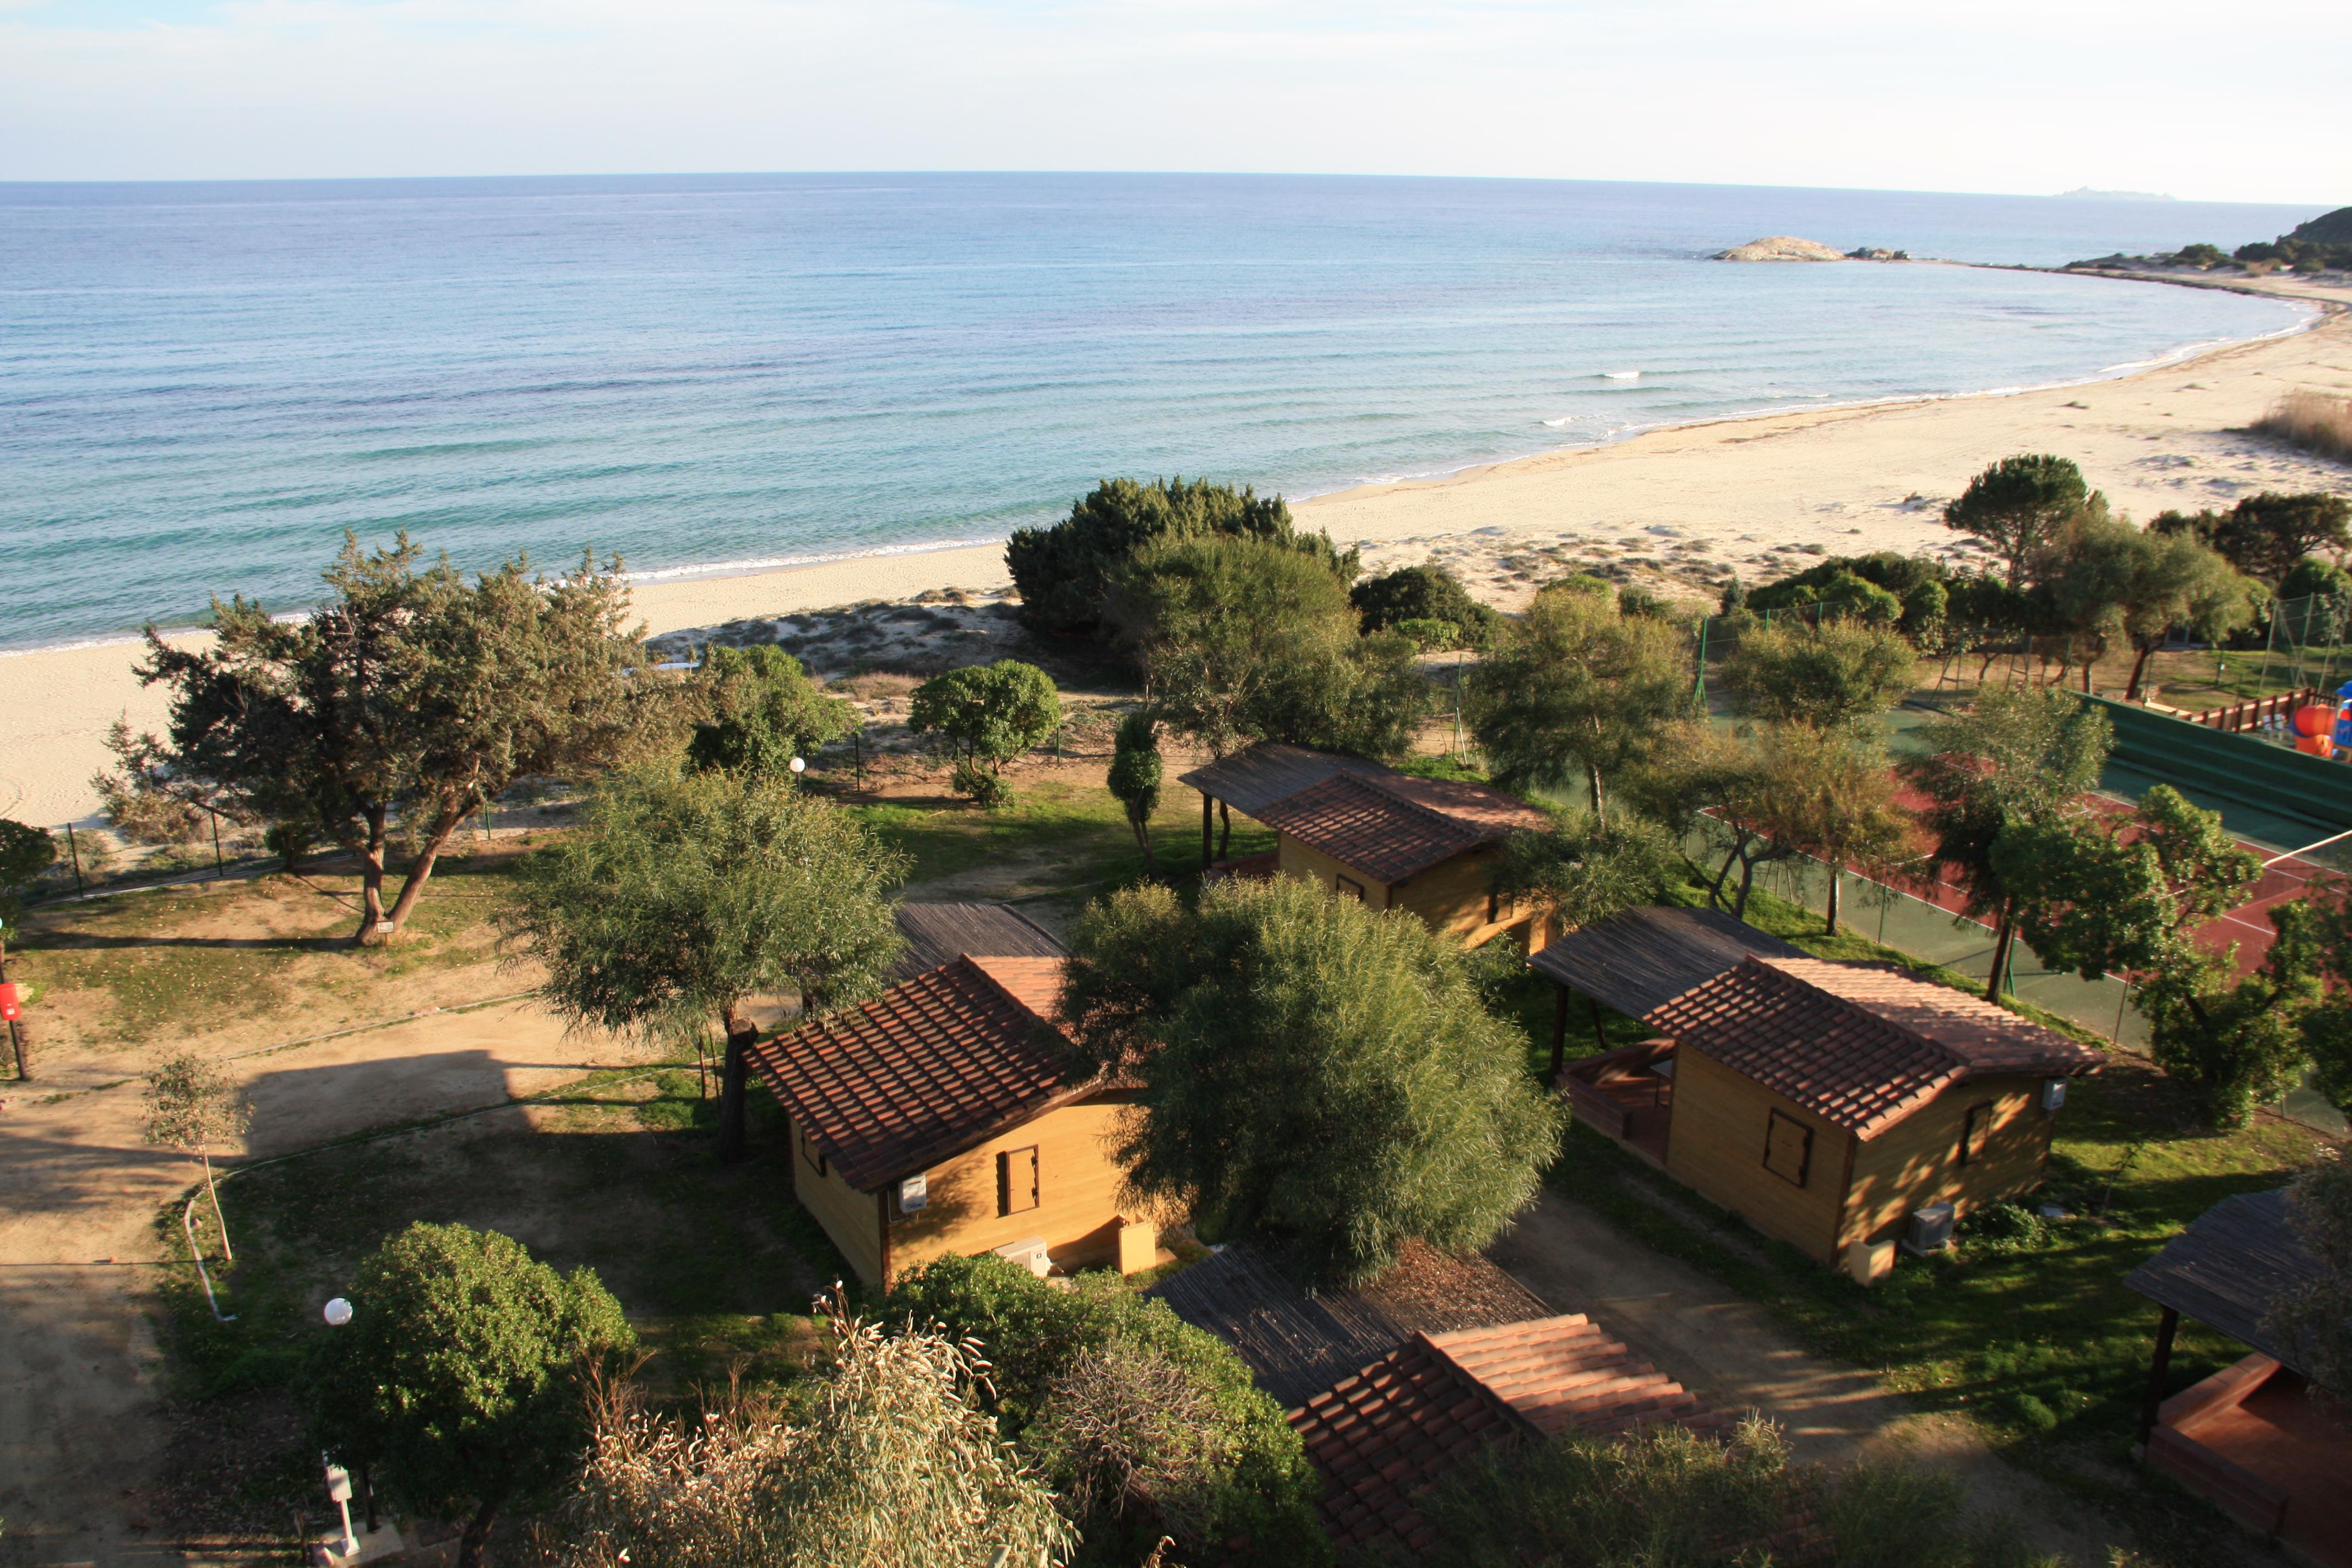  Villaggio Camping Capo Ferrato - Muravera